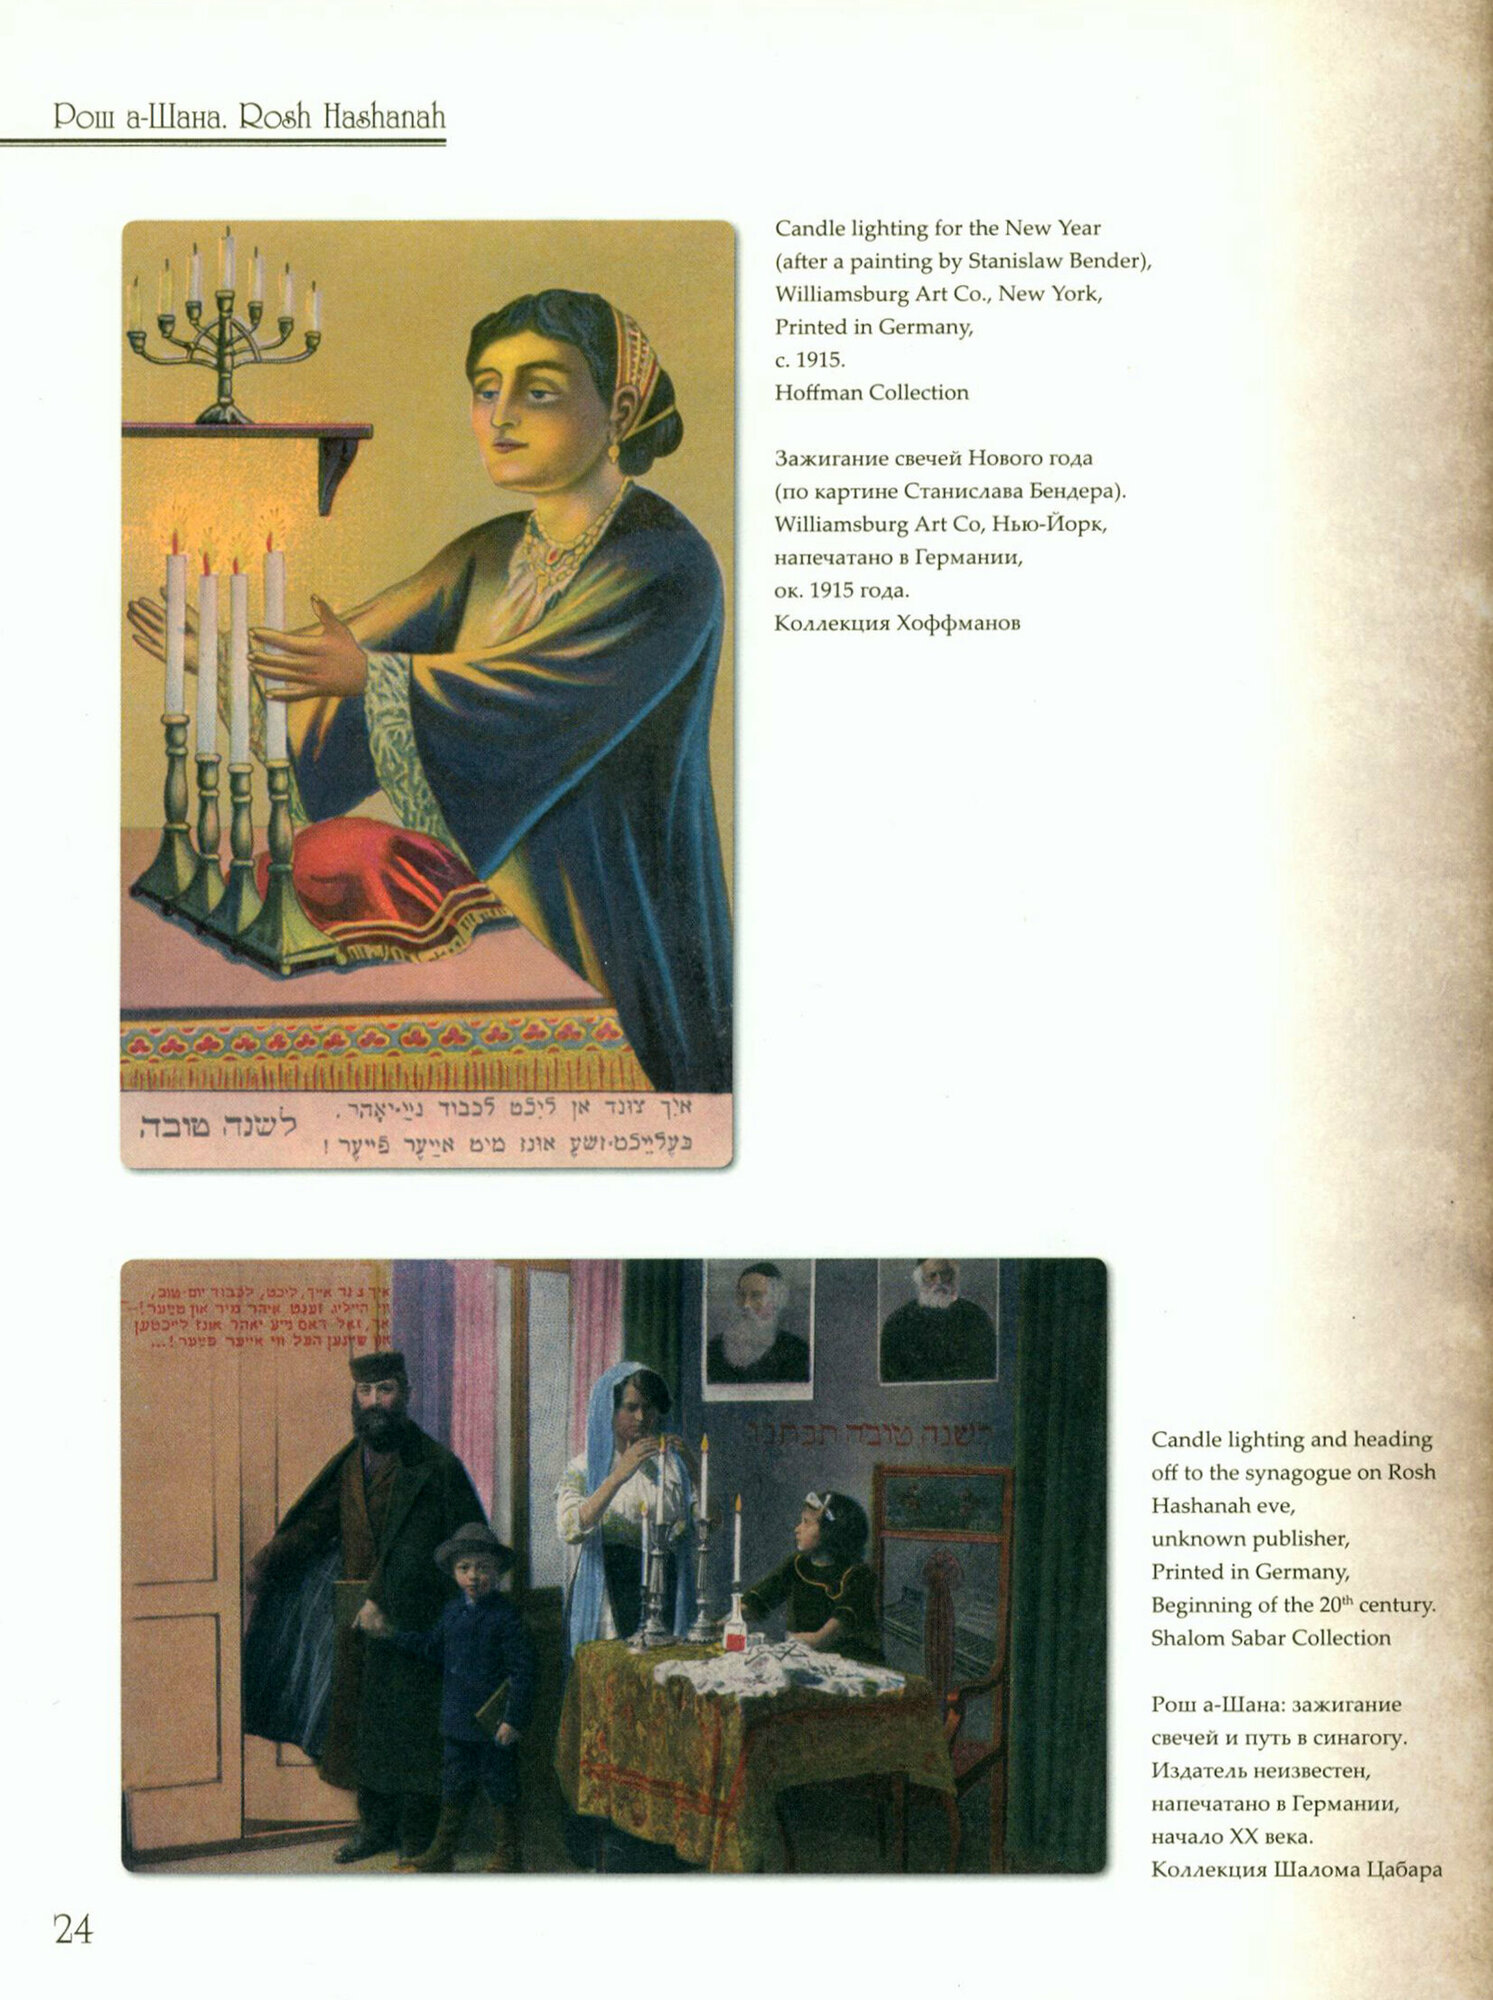 Еврейские праздники в почтовых открытках. Альбом - фото №2